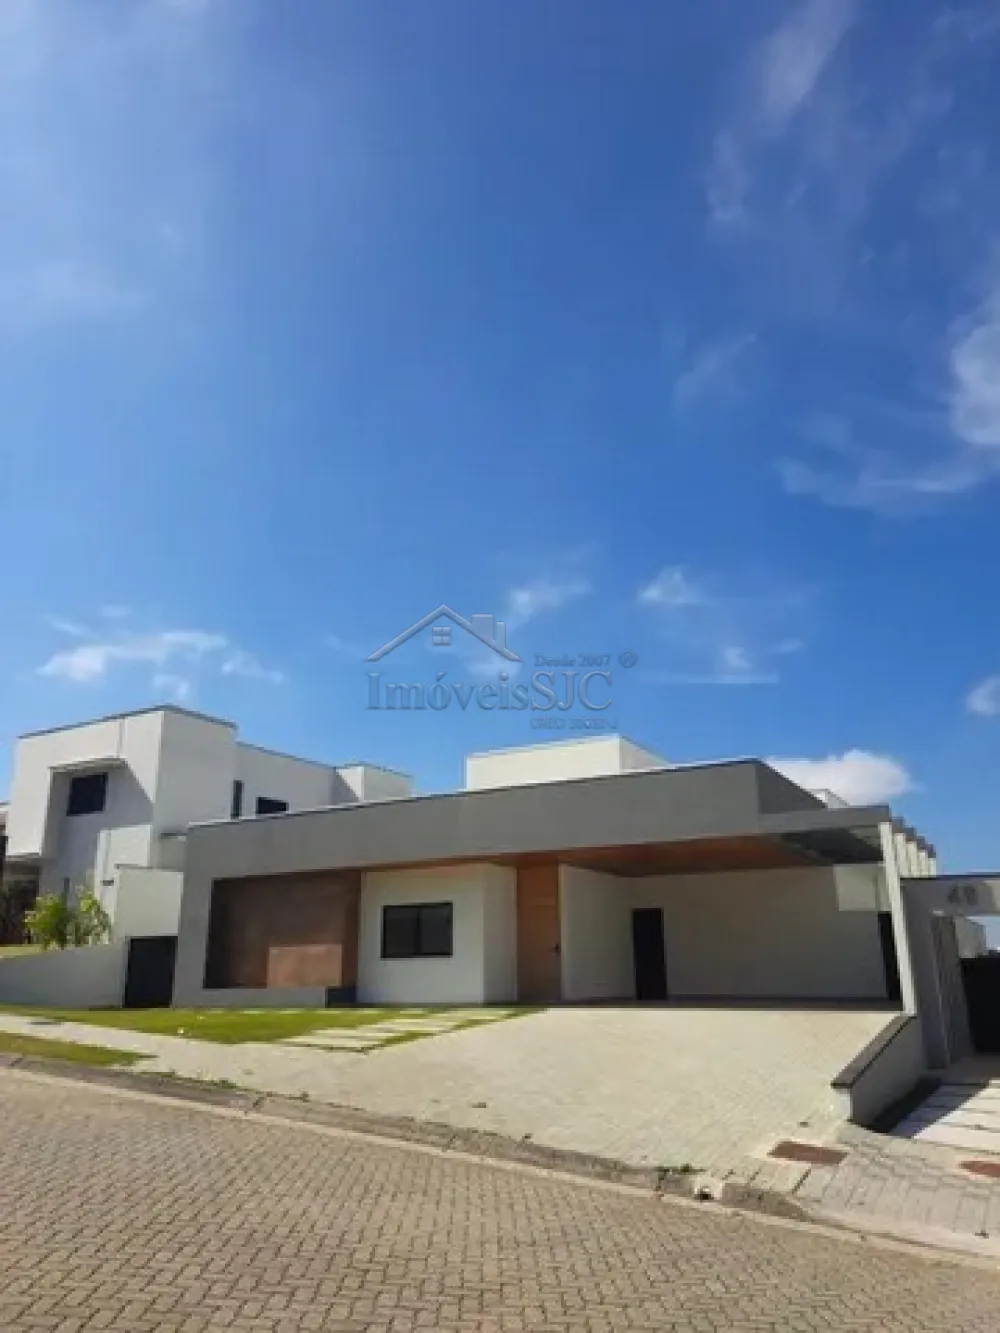 Comprar Casas / Condomínio em São José dos Campos R$ 3.900.000,00 - Foto 3